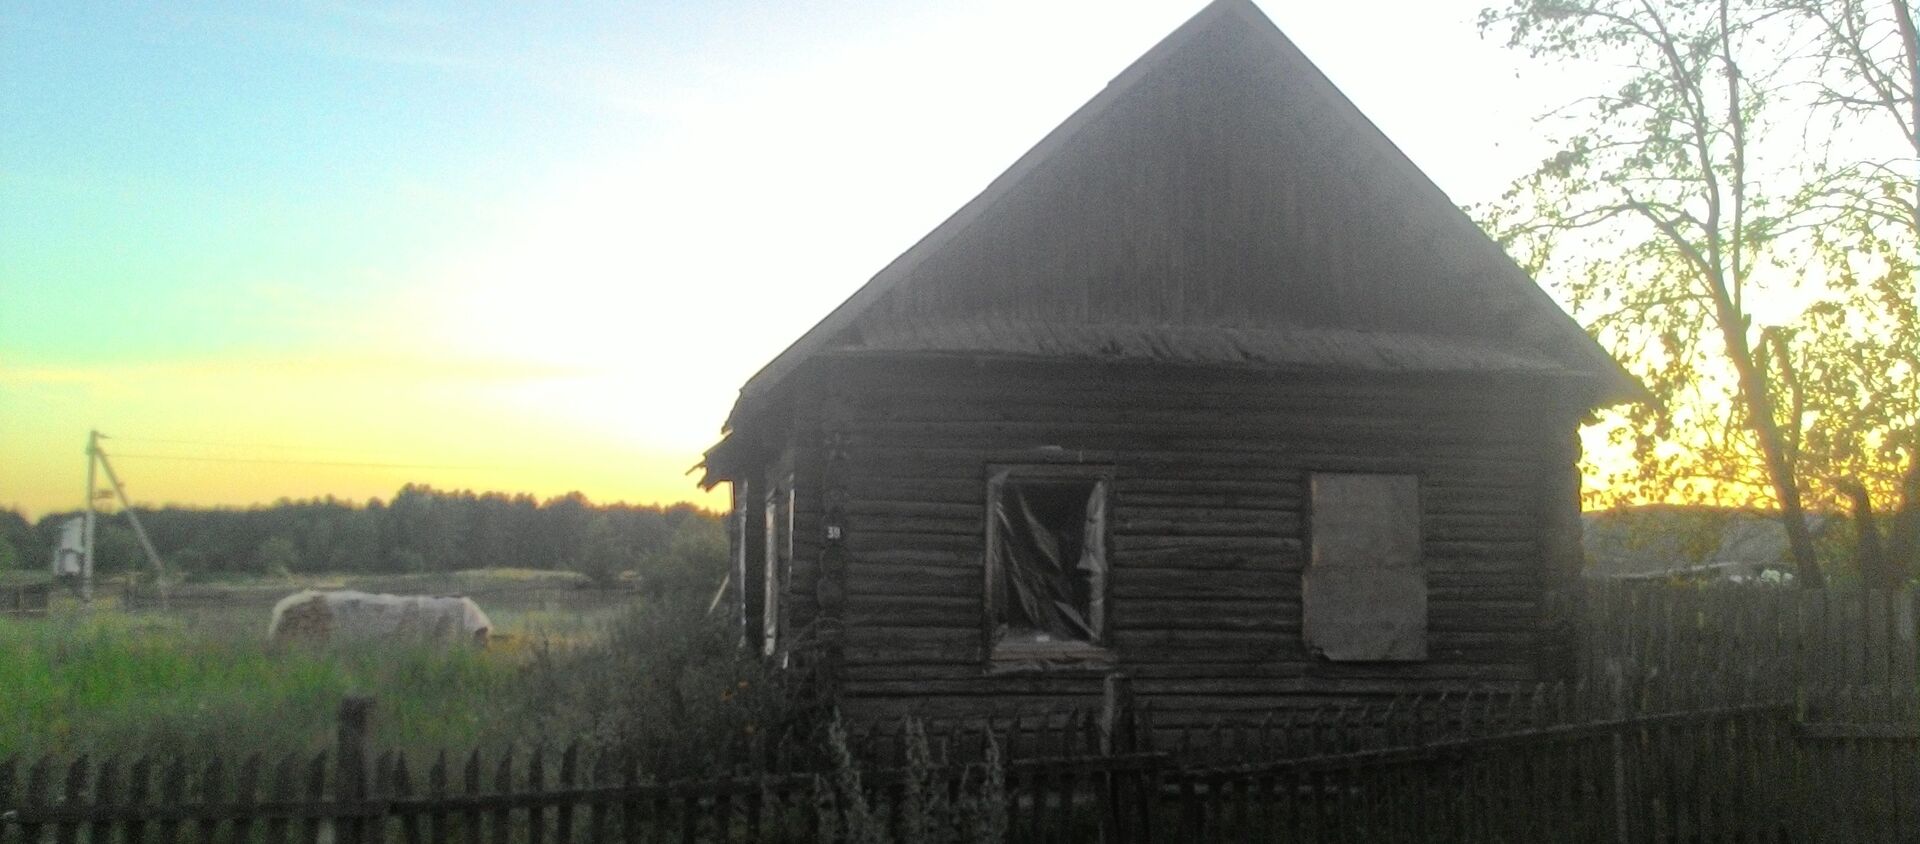 Заброшенный дом в сельской местности  - Sputnik Беларусь, 1920, 16.06.2020